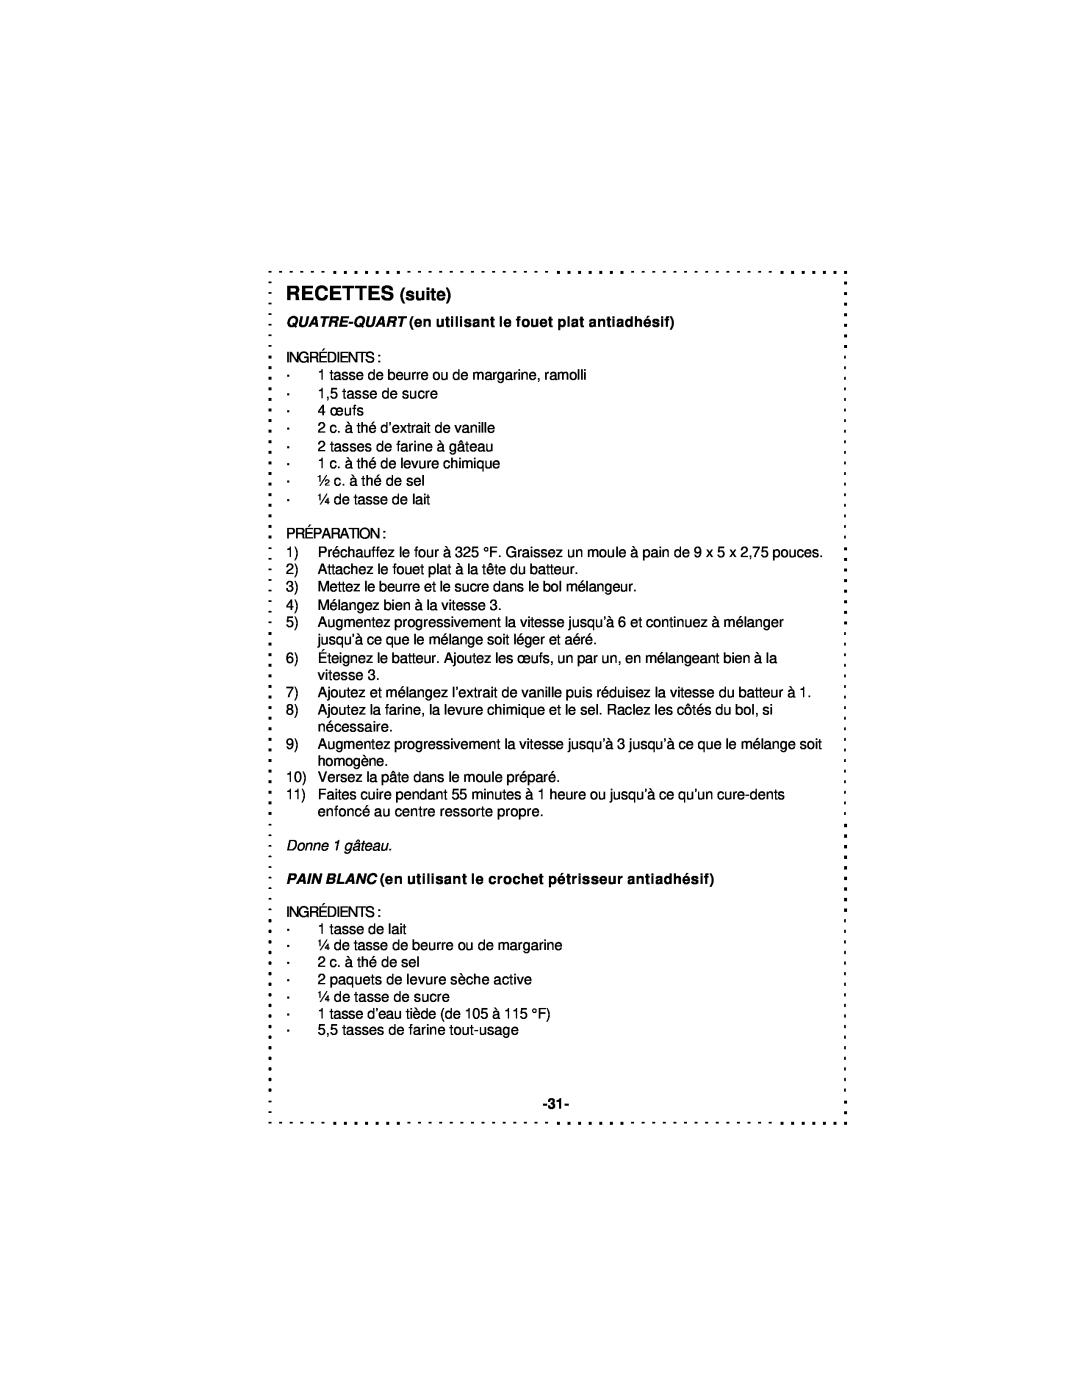 DeLonghi DSM5 - 7 Series instruction manual RECETTES suite, Donne 1 gâteau 